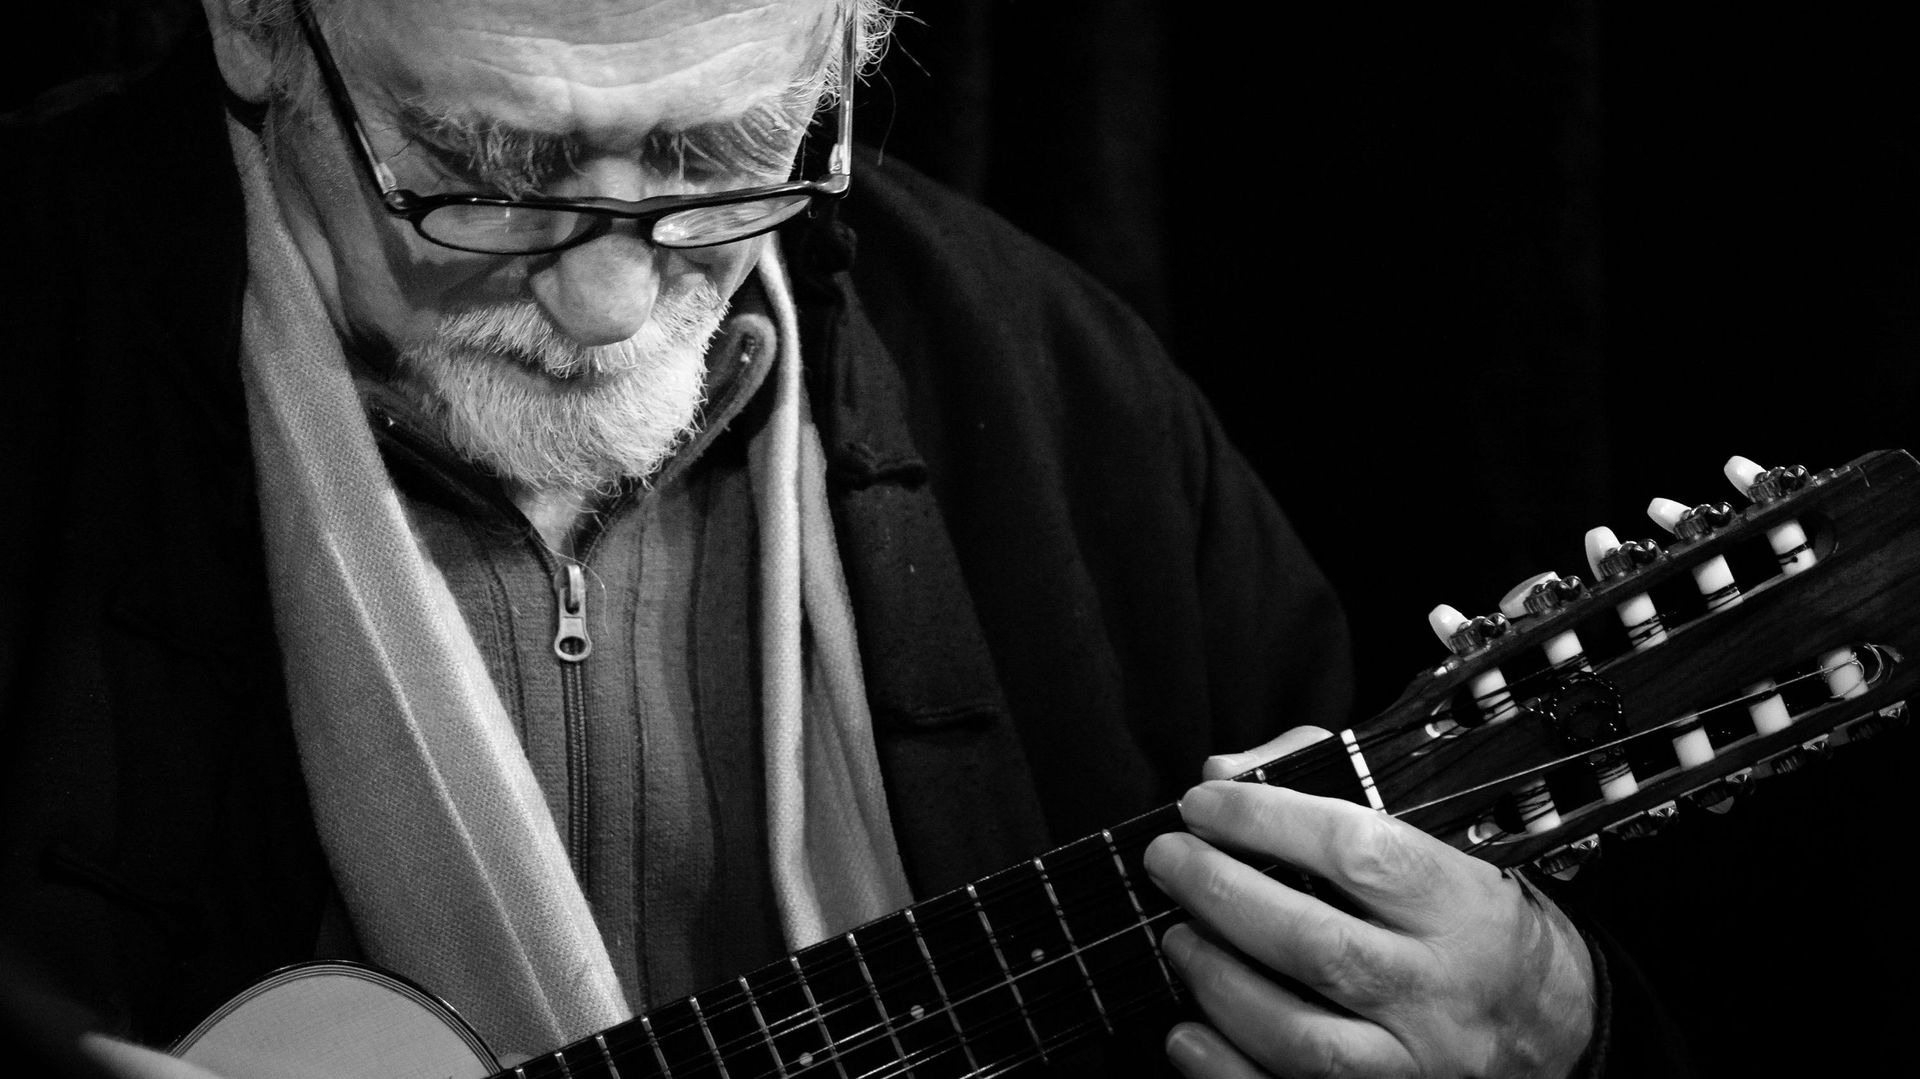 Le musicien et compositeur argentin Jorge Milchberg, célèbre pour avoir adapté et enregistré dans les années 60 "El Condor pasa" devenu la mélodie andine probablement la plus connue au monde.